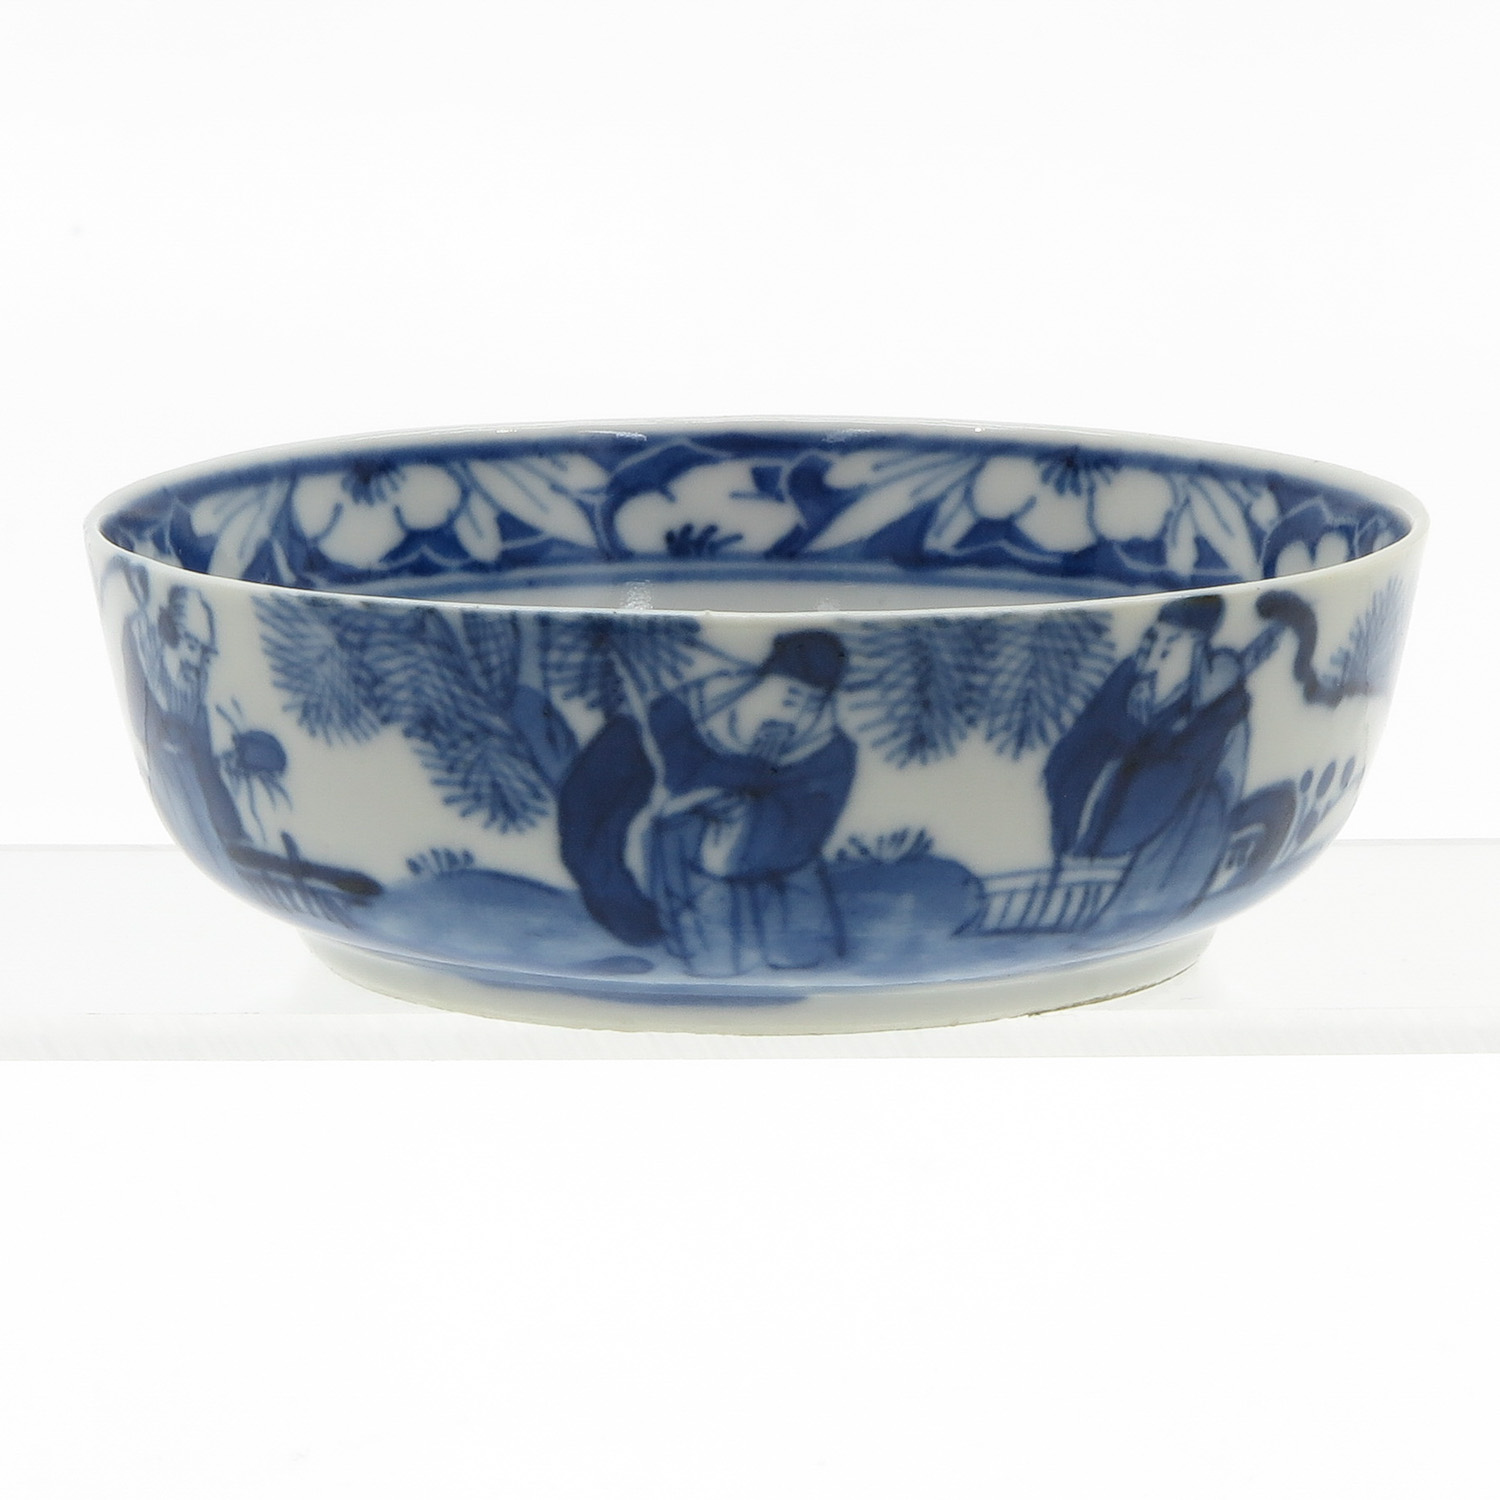 China Porcelain Bowl - Image 3 of 4